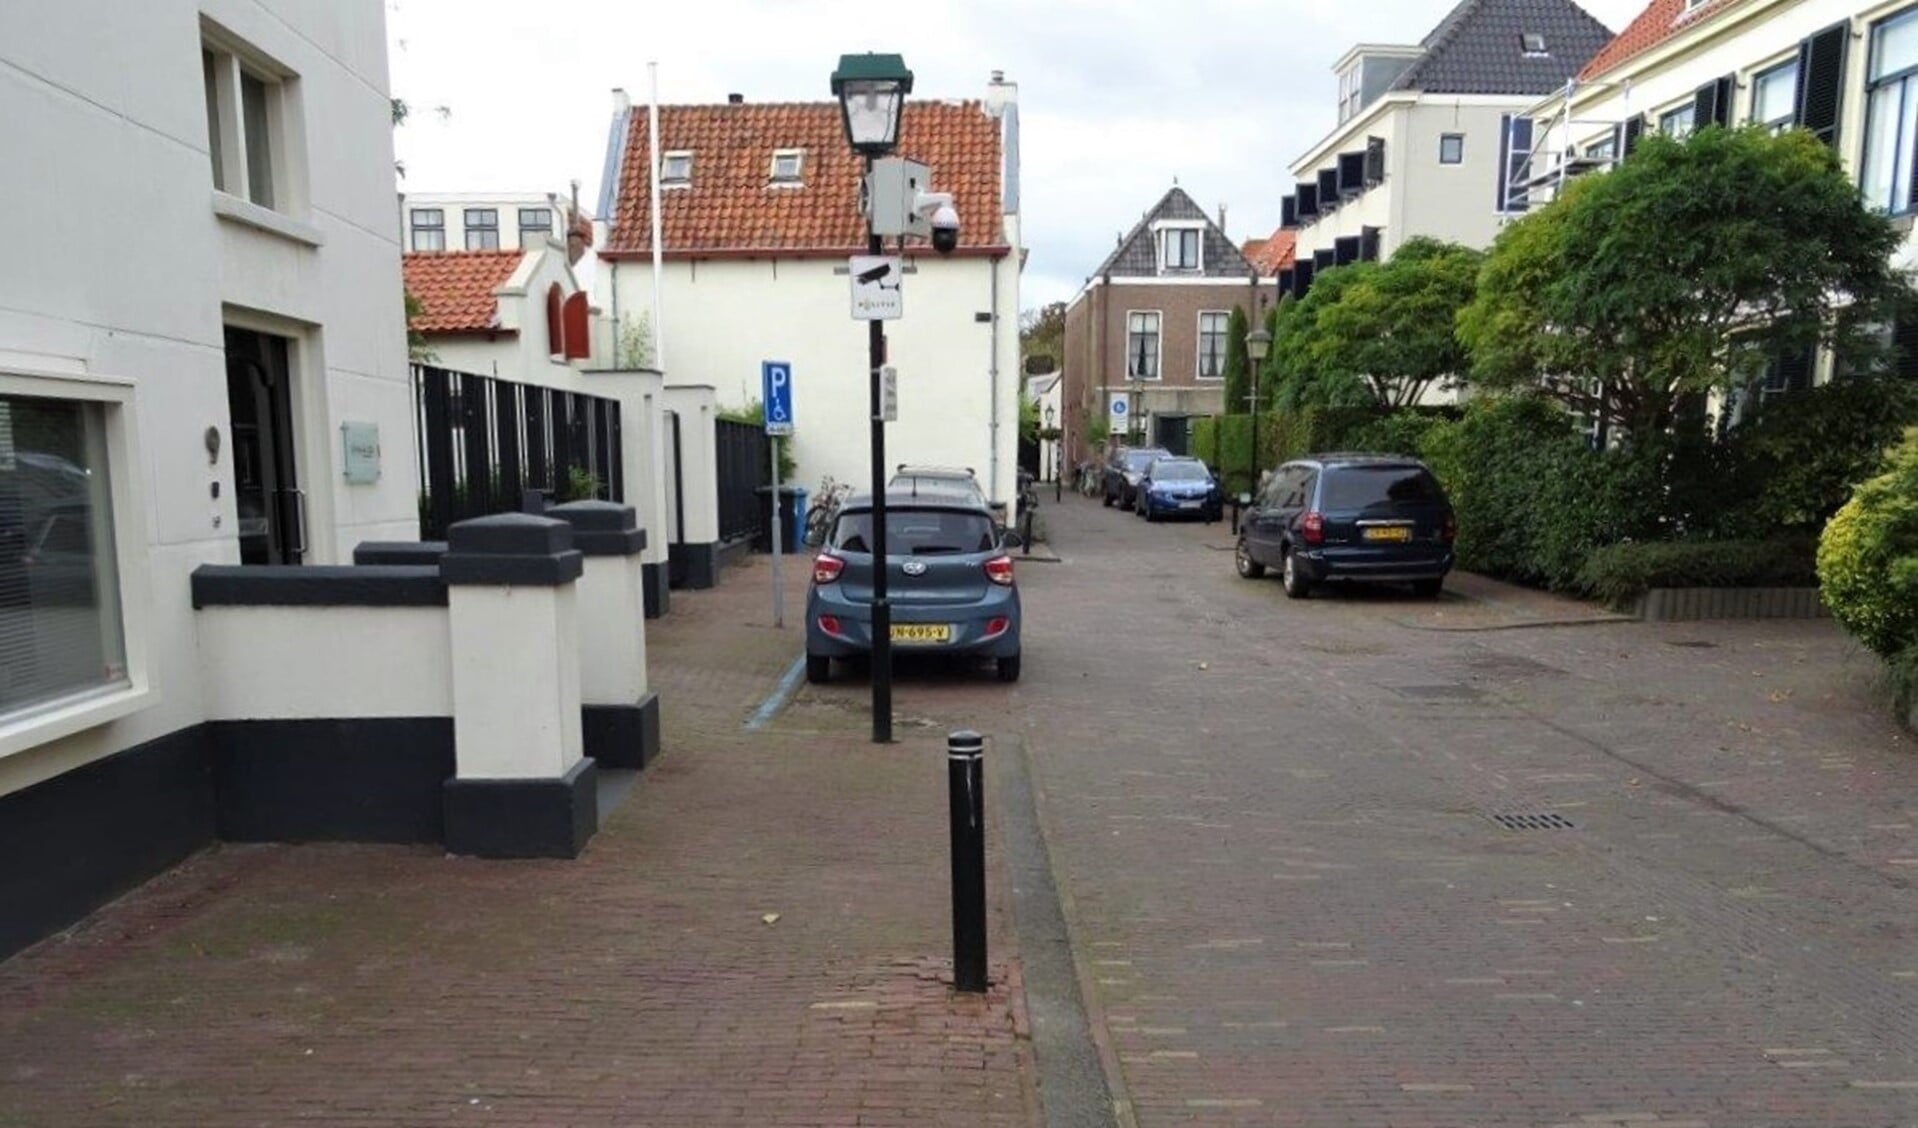 De Sionsstraat in Voorburg. De camera zou na het incident zijn opgehangen (foto: Ap de Heus).